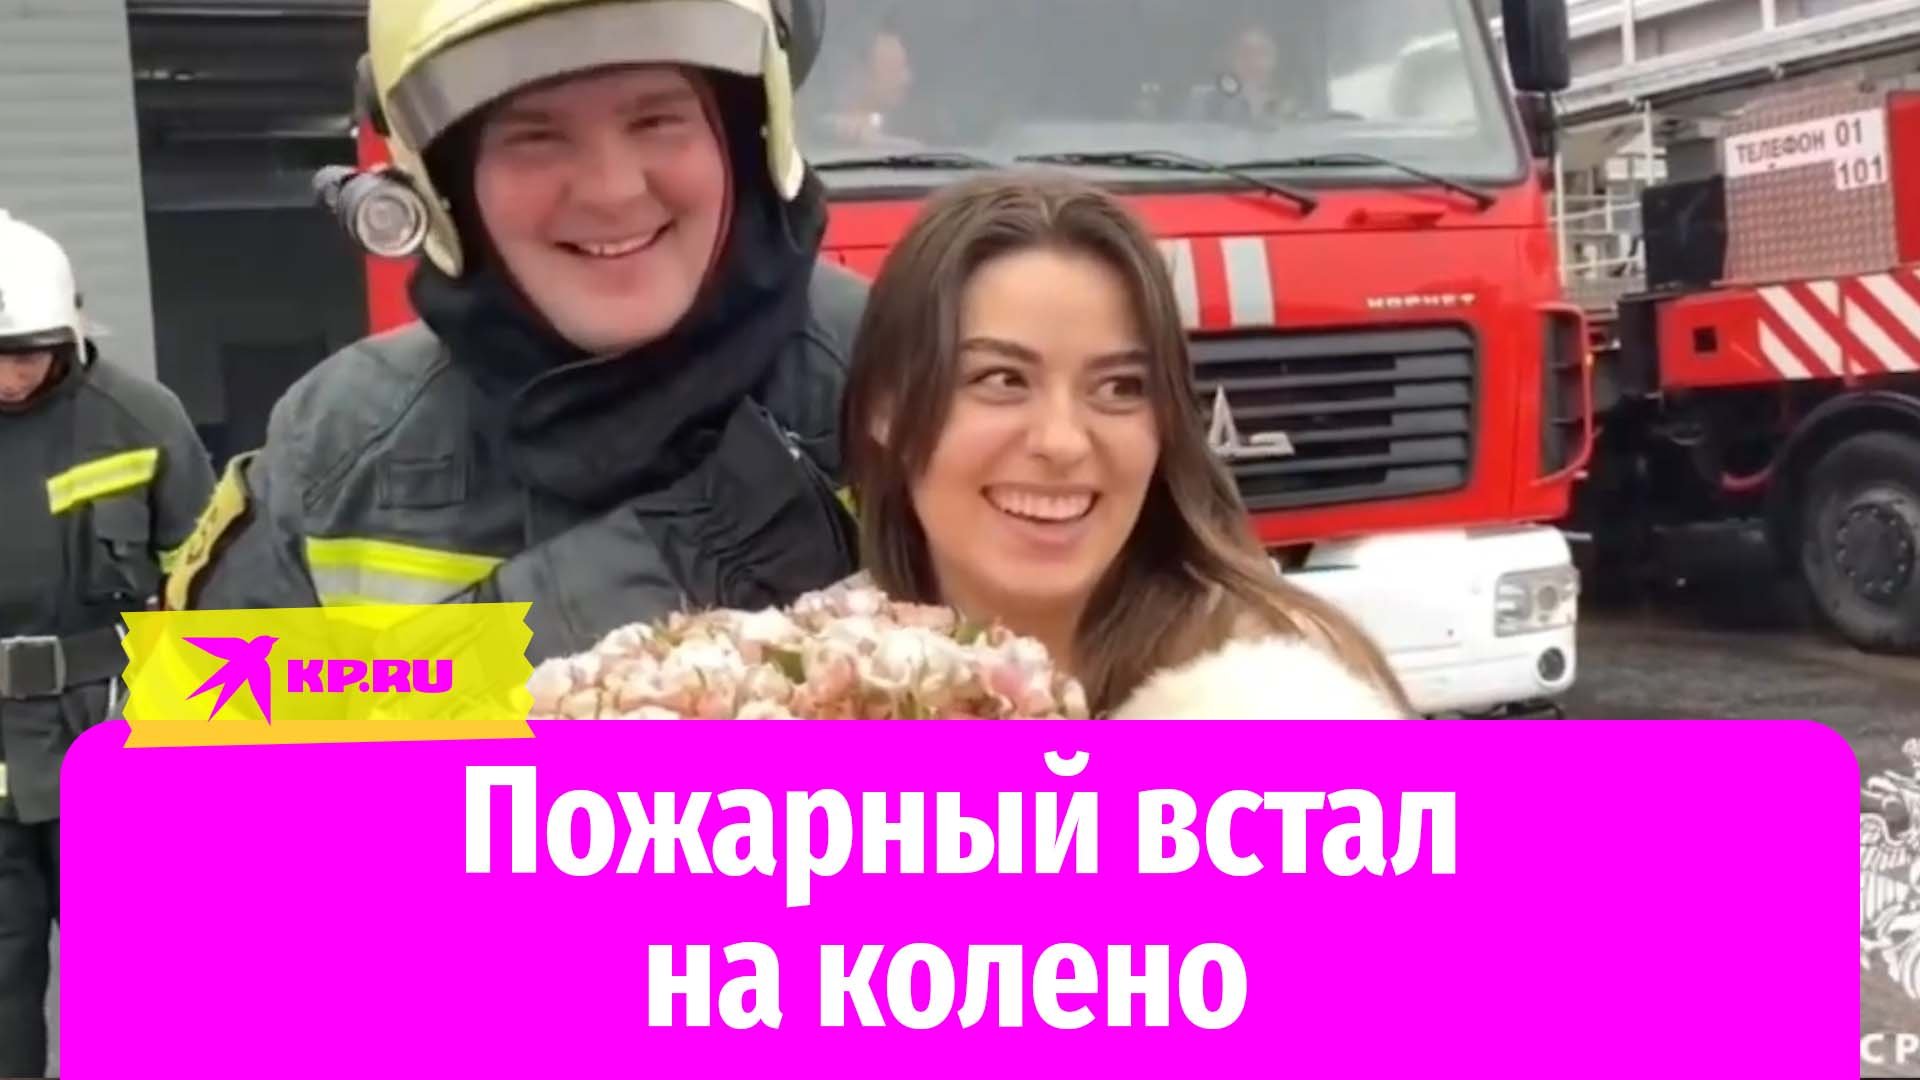 В Курске пожарный сделал предложение своей девушке